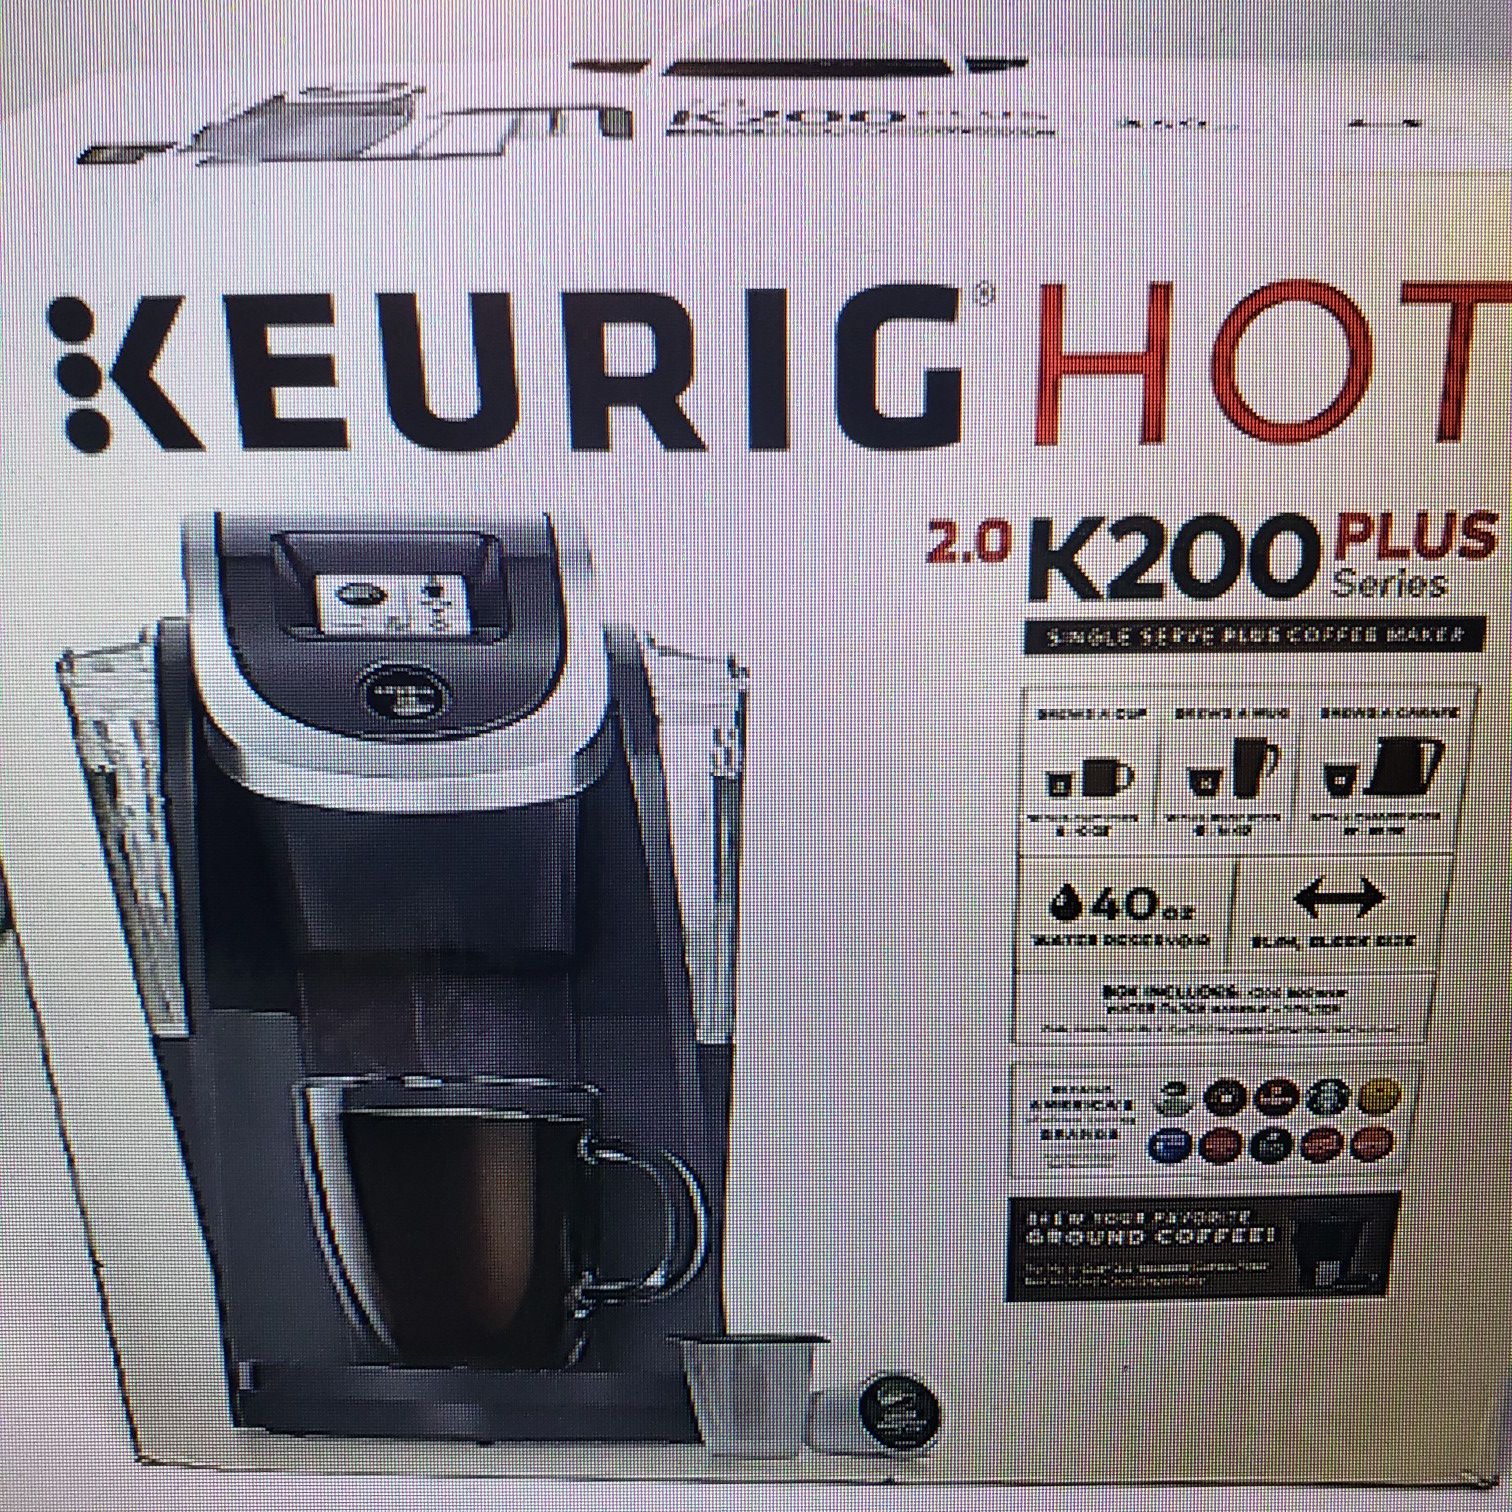 Keurig k200 plus coffee maker